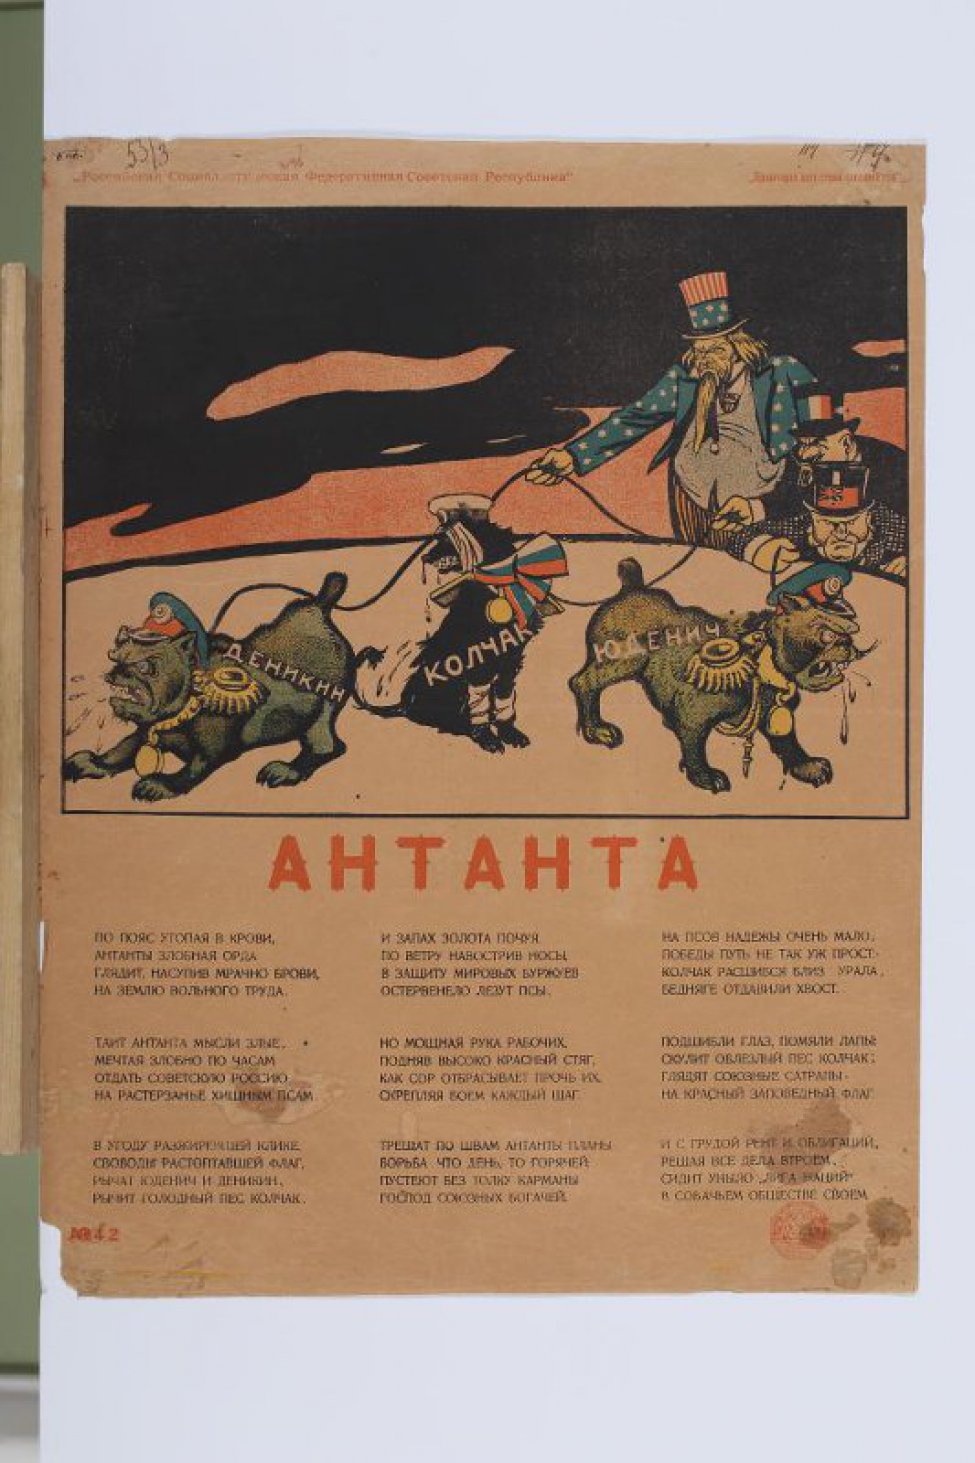 Изображены Деникин, Колчак и Юденич в образе псов, которых держат на цепях справа три капиталиста. Внизу текст: " По пояс утопая в крови... в собачьем обществе своем".